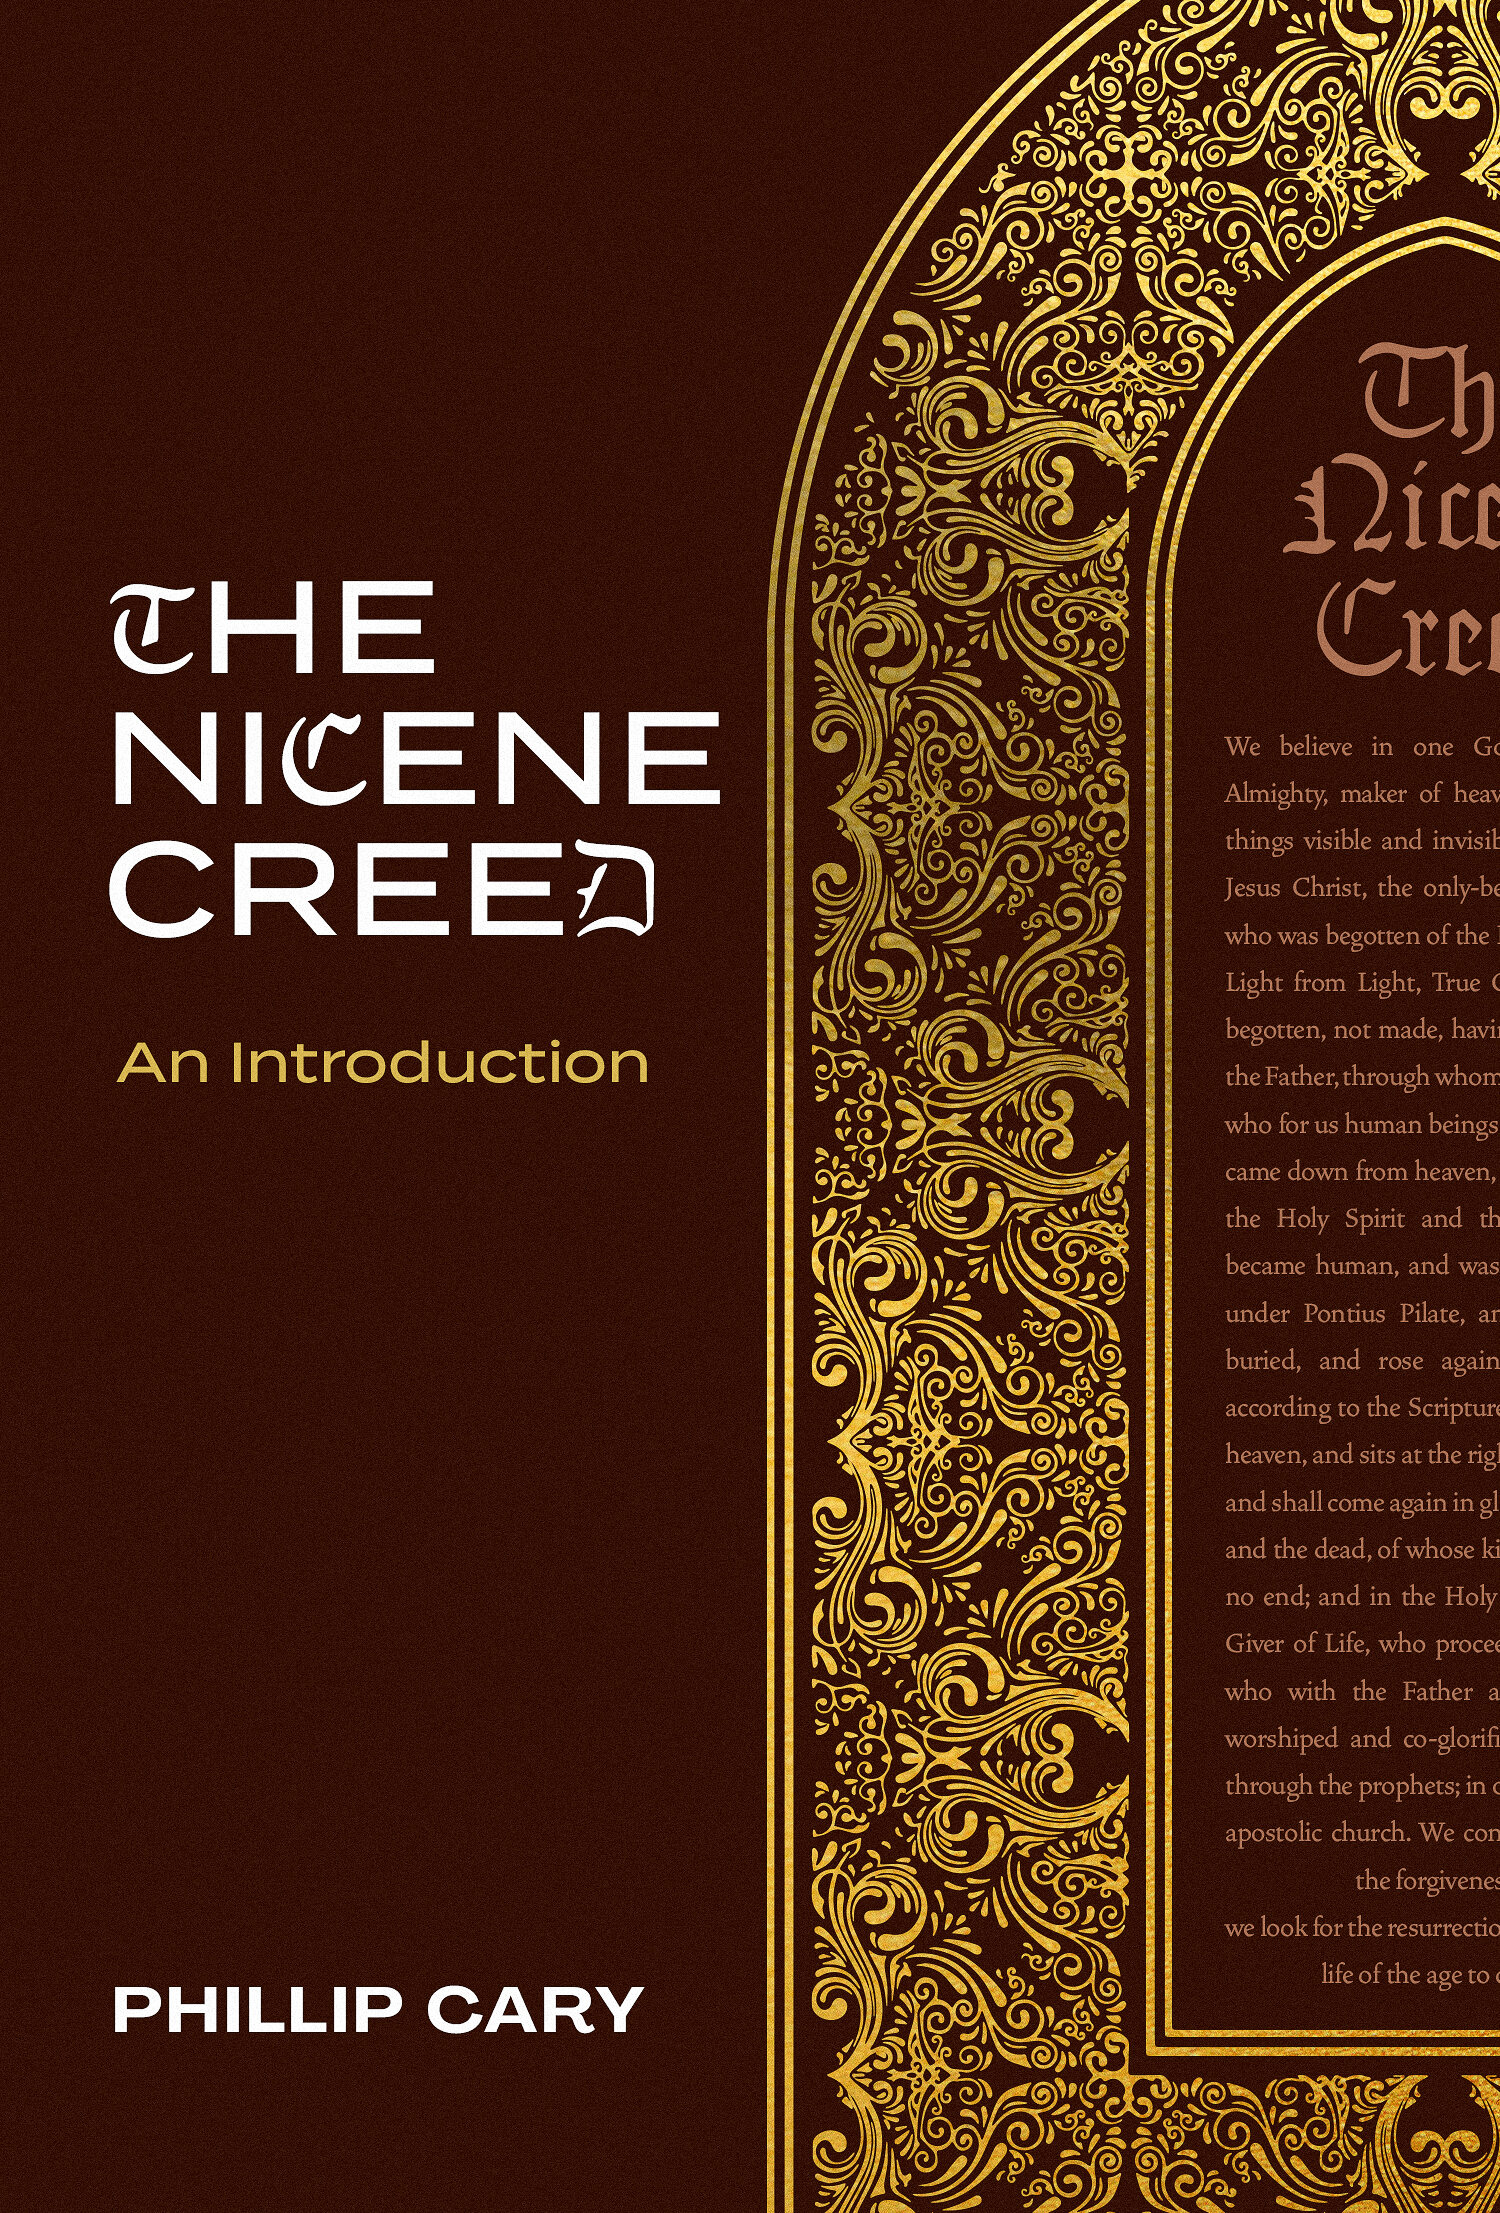 The Nicene Creed